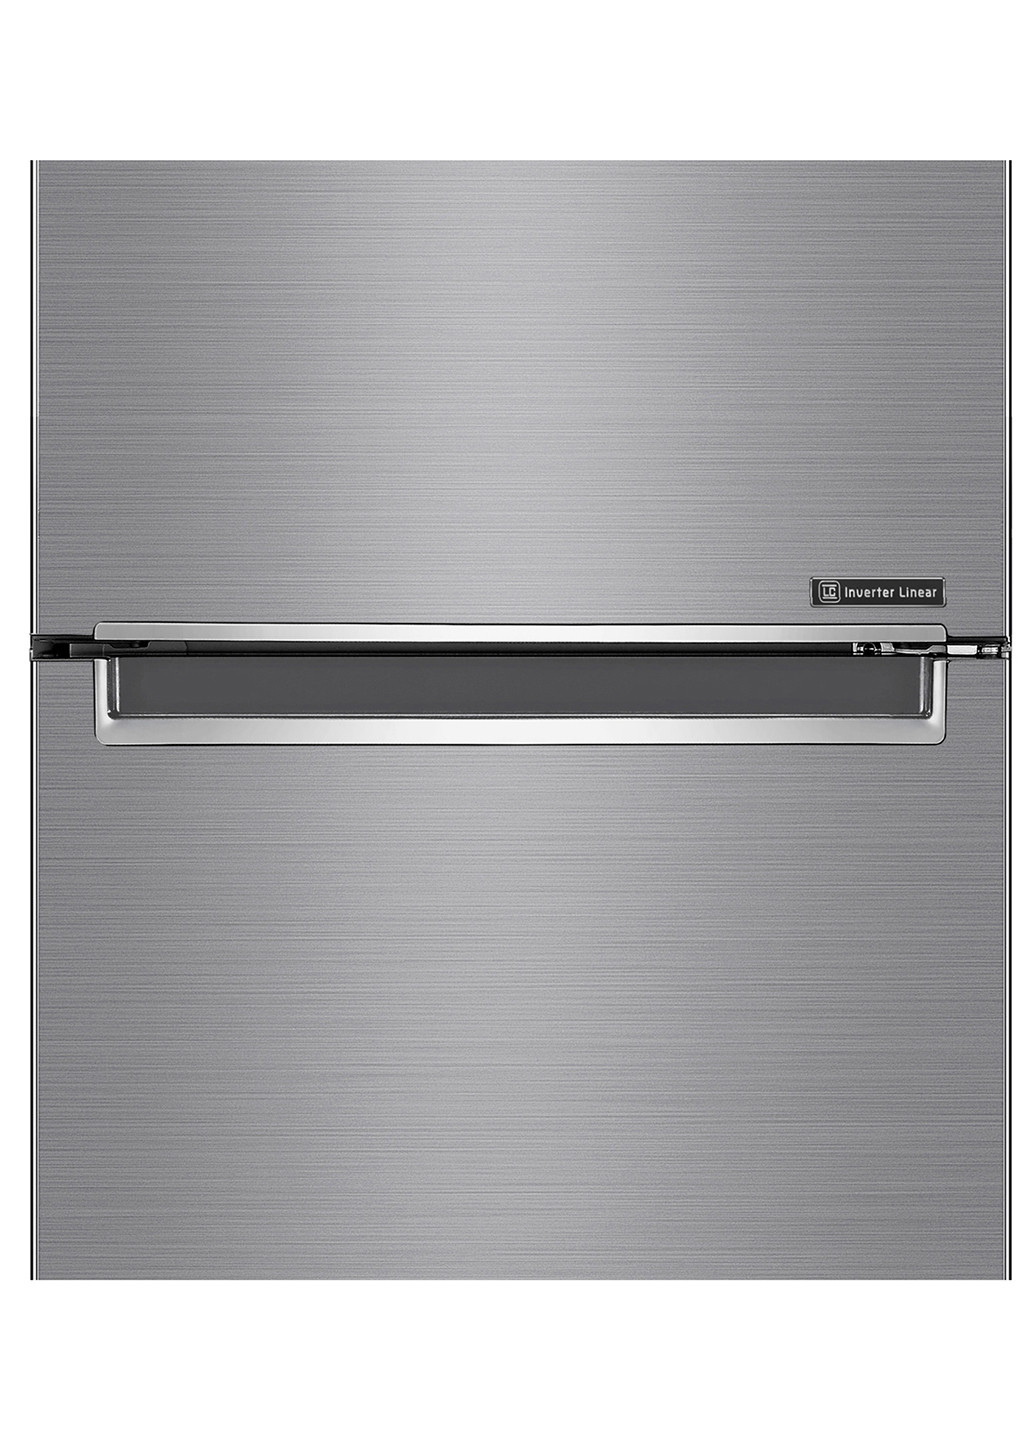 Холодильник комби LG GW-B509SMDZ